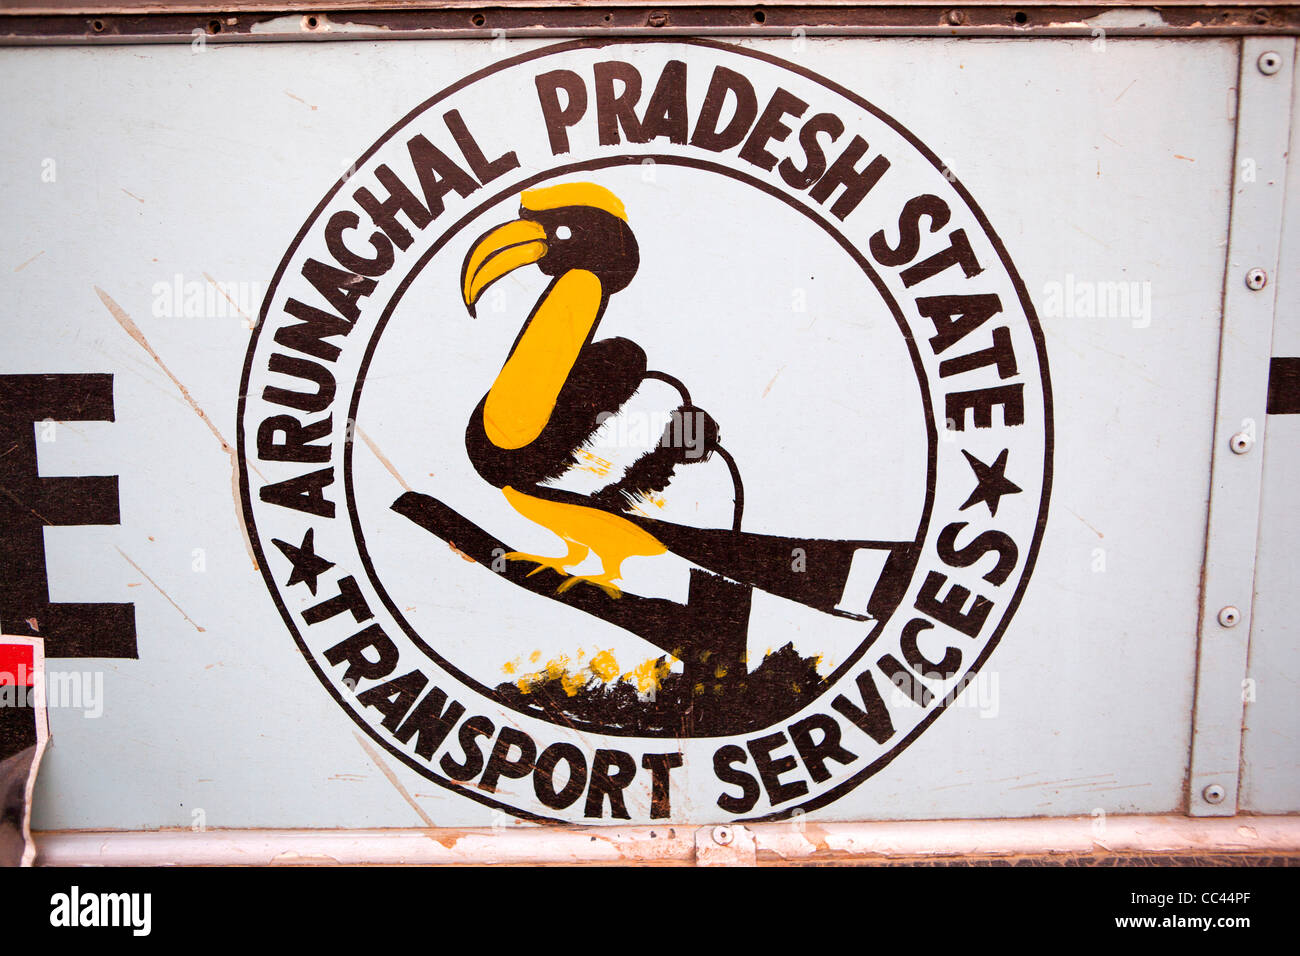 Indien, Arunachal Pradesh, Itanagar, Arunachal Pradesh State Transport Services Hornbill Symbol auf Seite des Busses Stockfoto